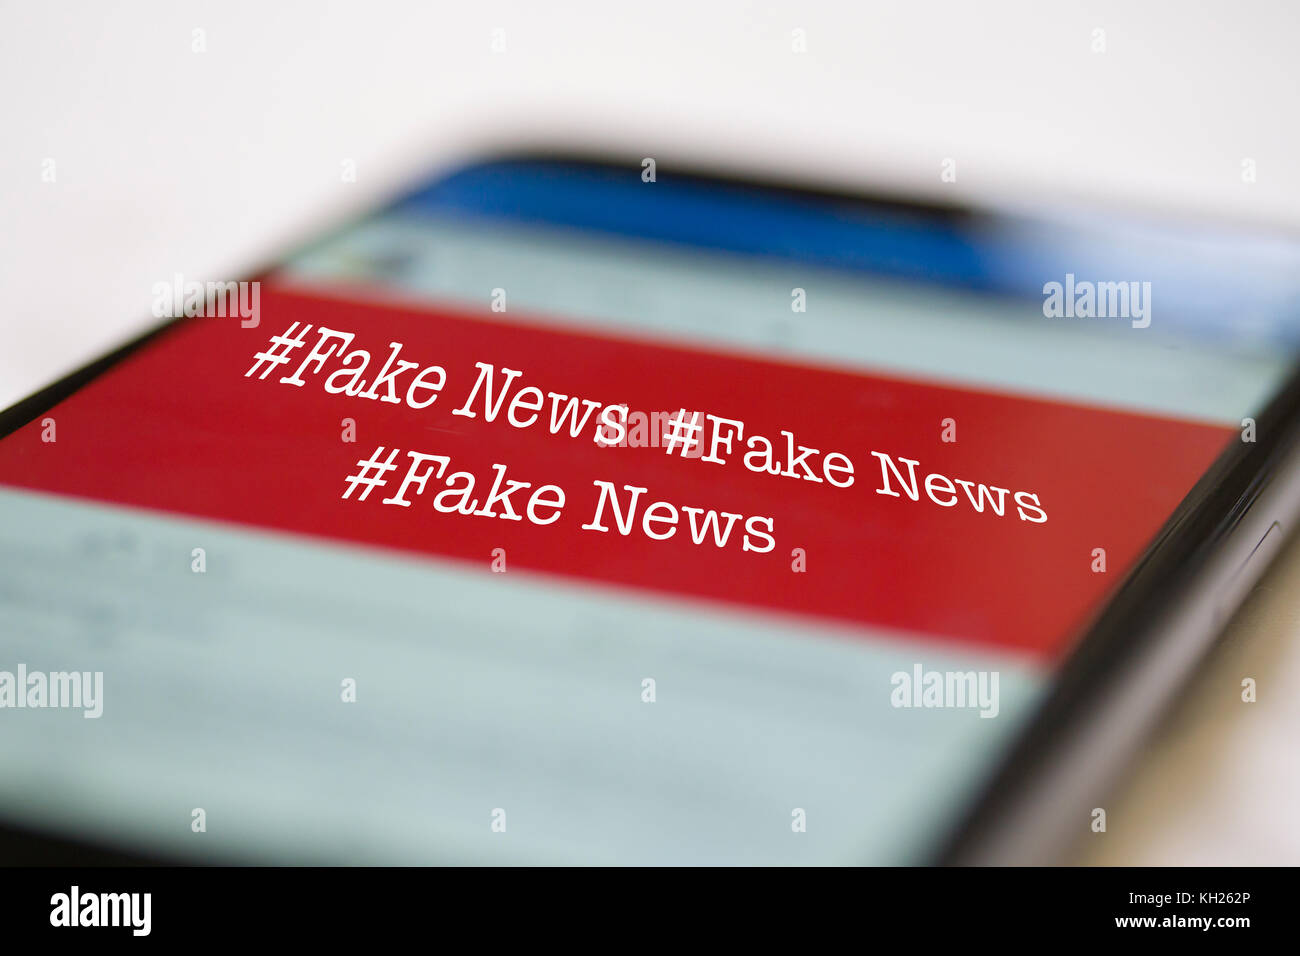 Image de concept utilisant Apple iPhone 6 et Facebook page mettant en évidence le numéro de fake News #fake News Banque D'Images